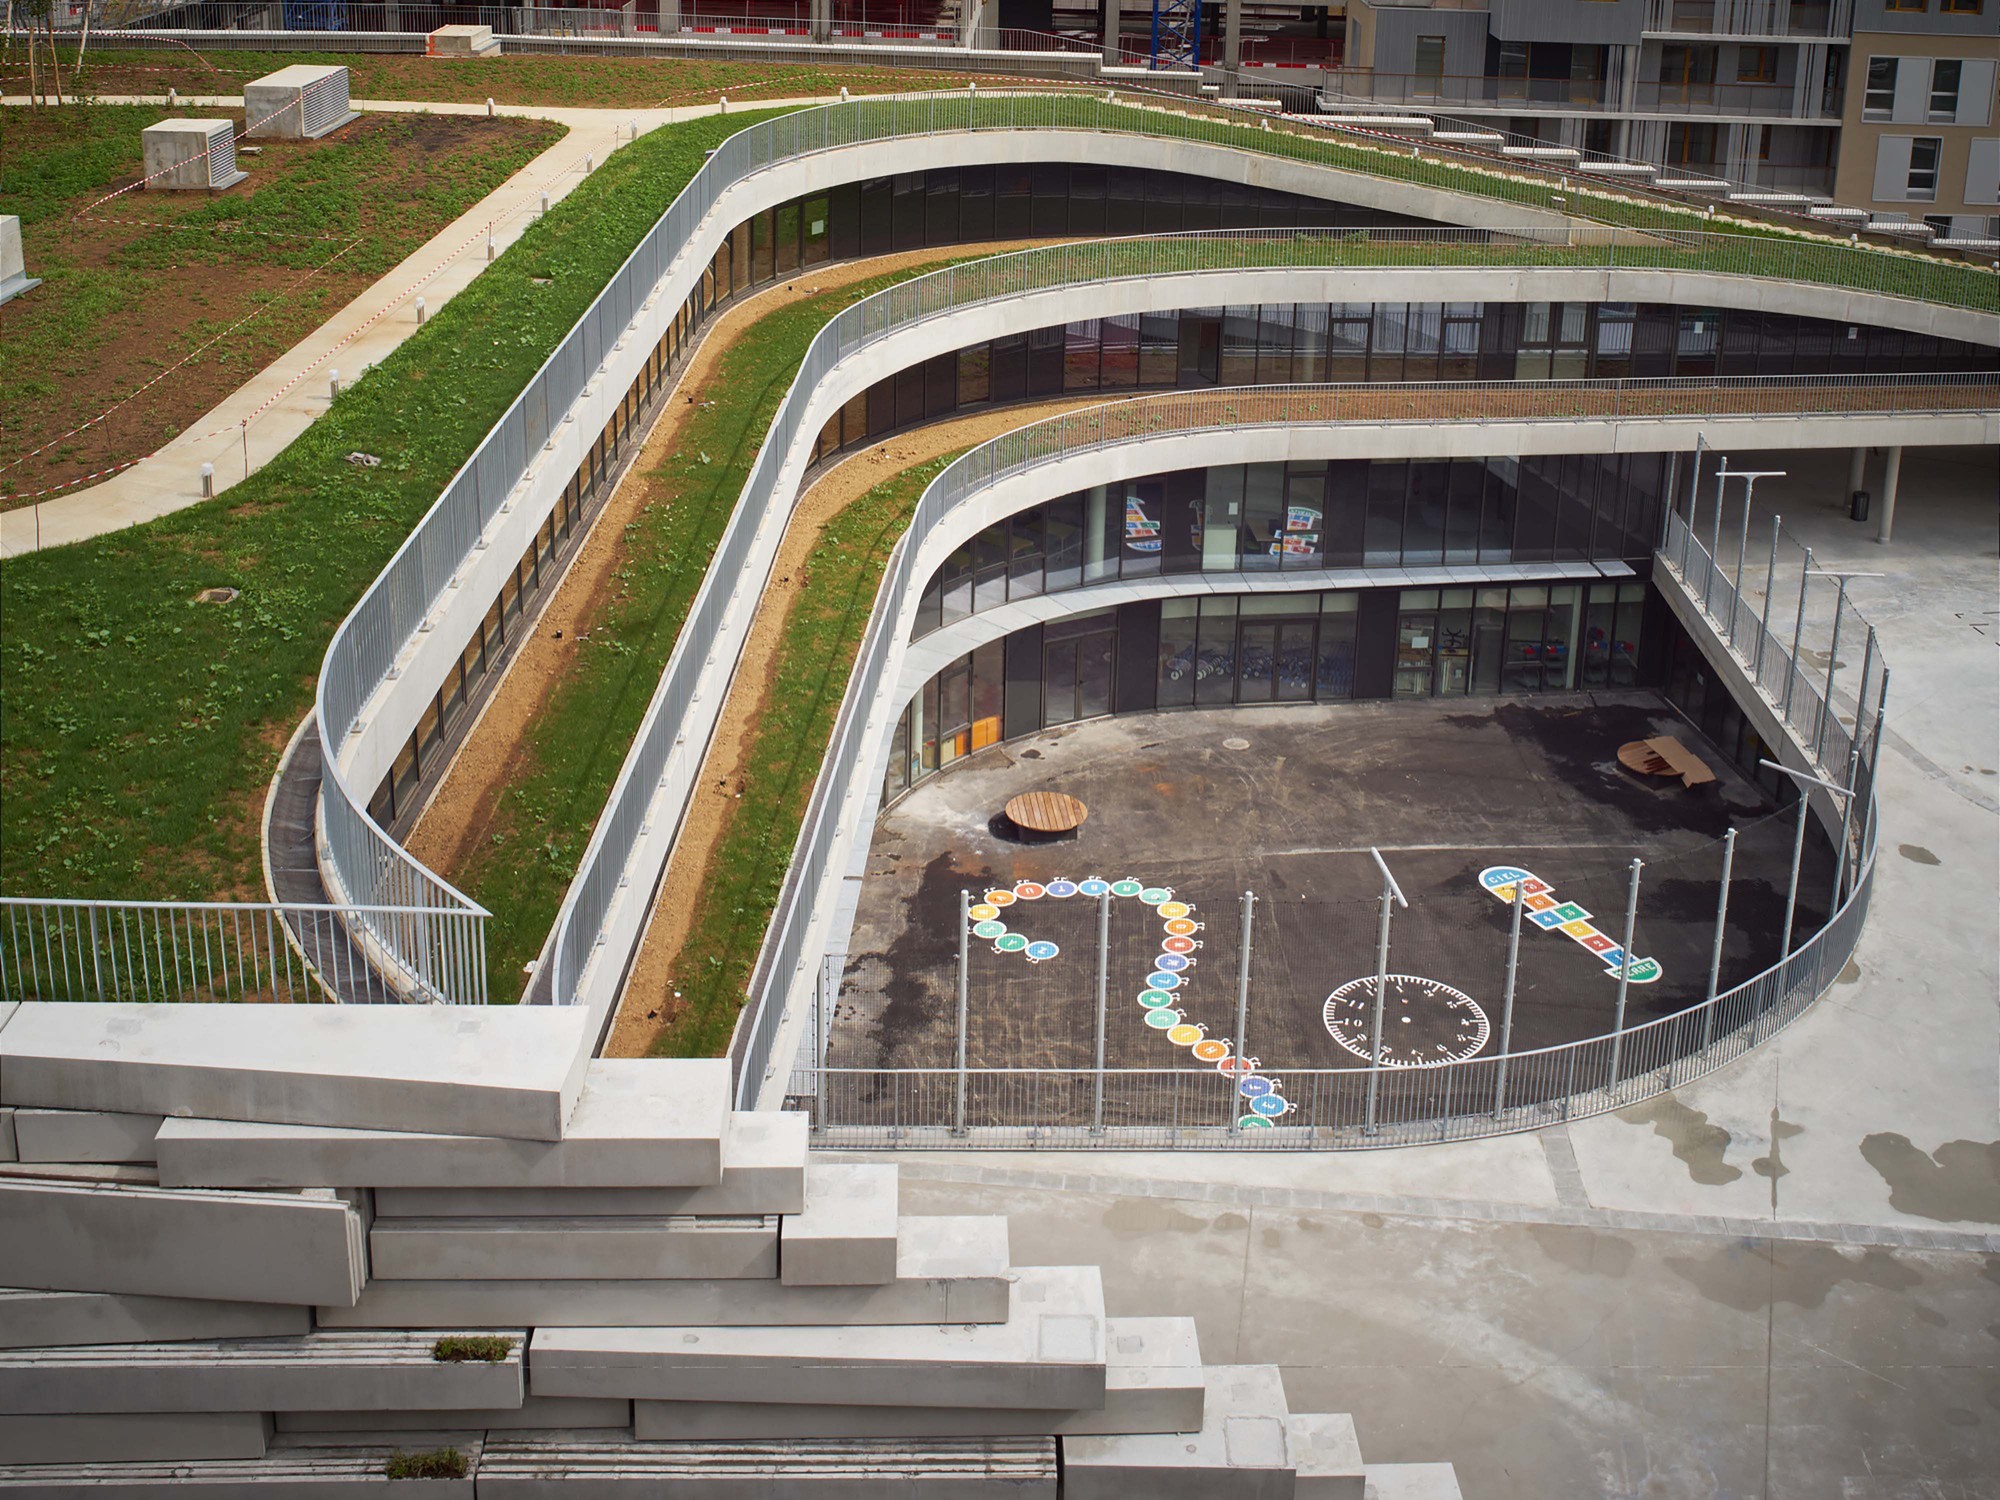 طراحی و ساخت مدرسه ابتدایی در فرانسه ، تنوع زیستی در محیط های شهری